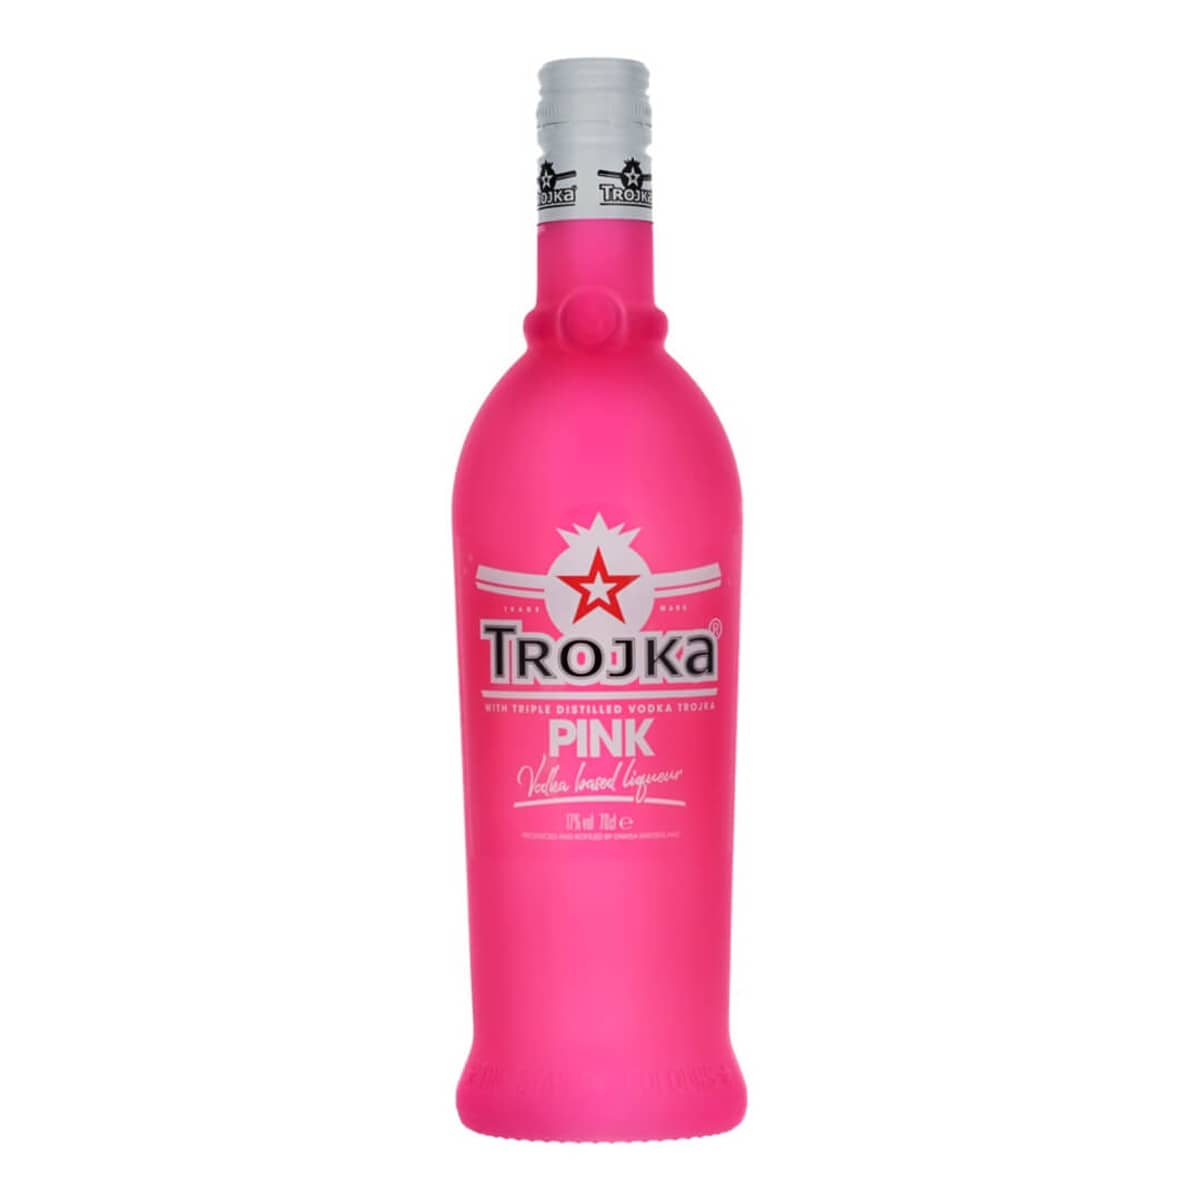 pink trojka vodka